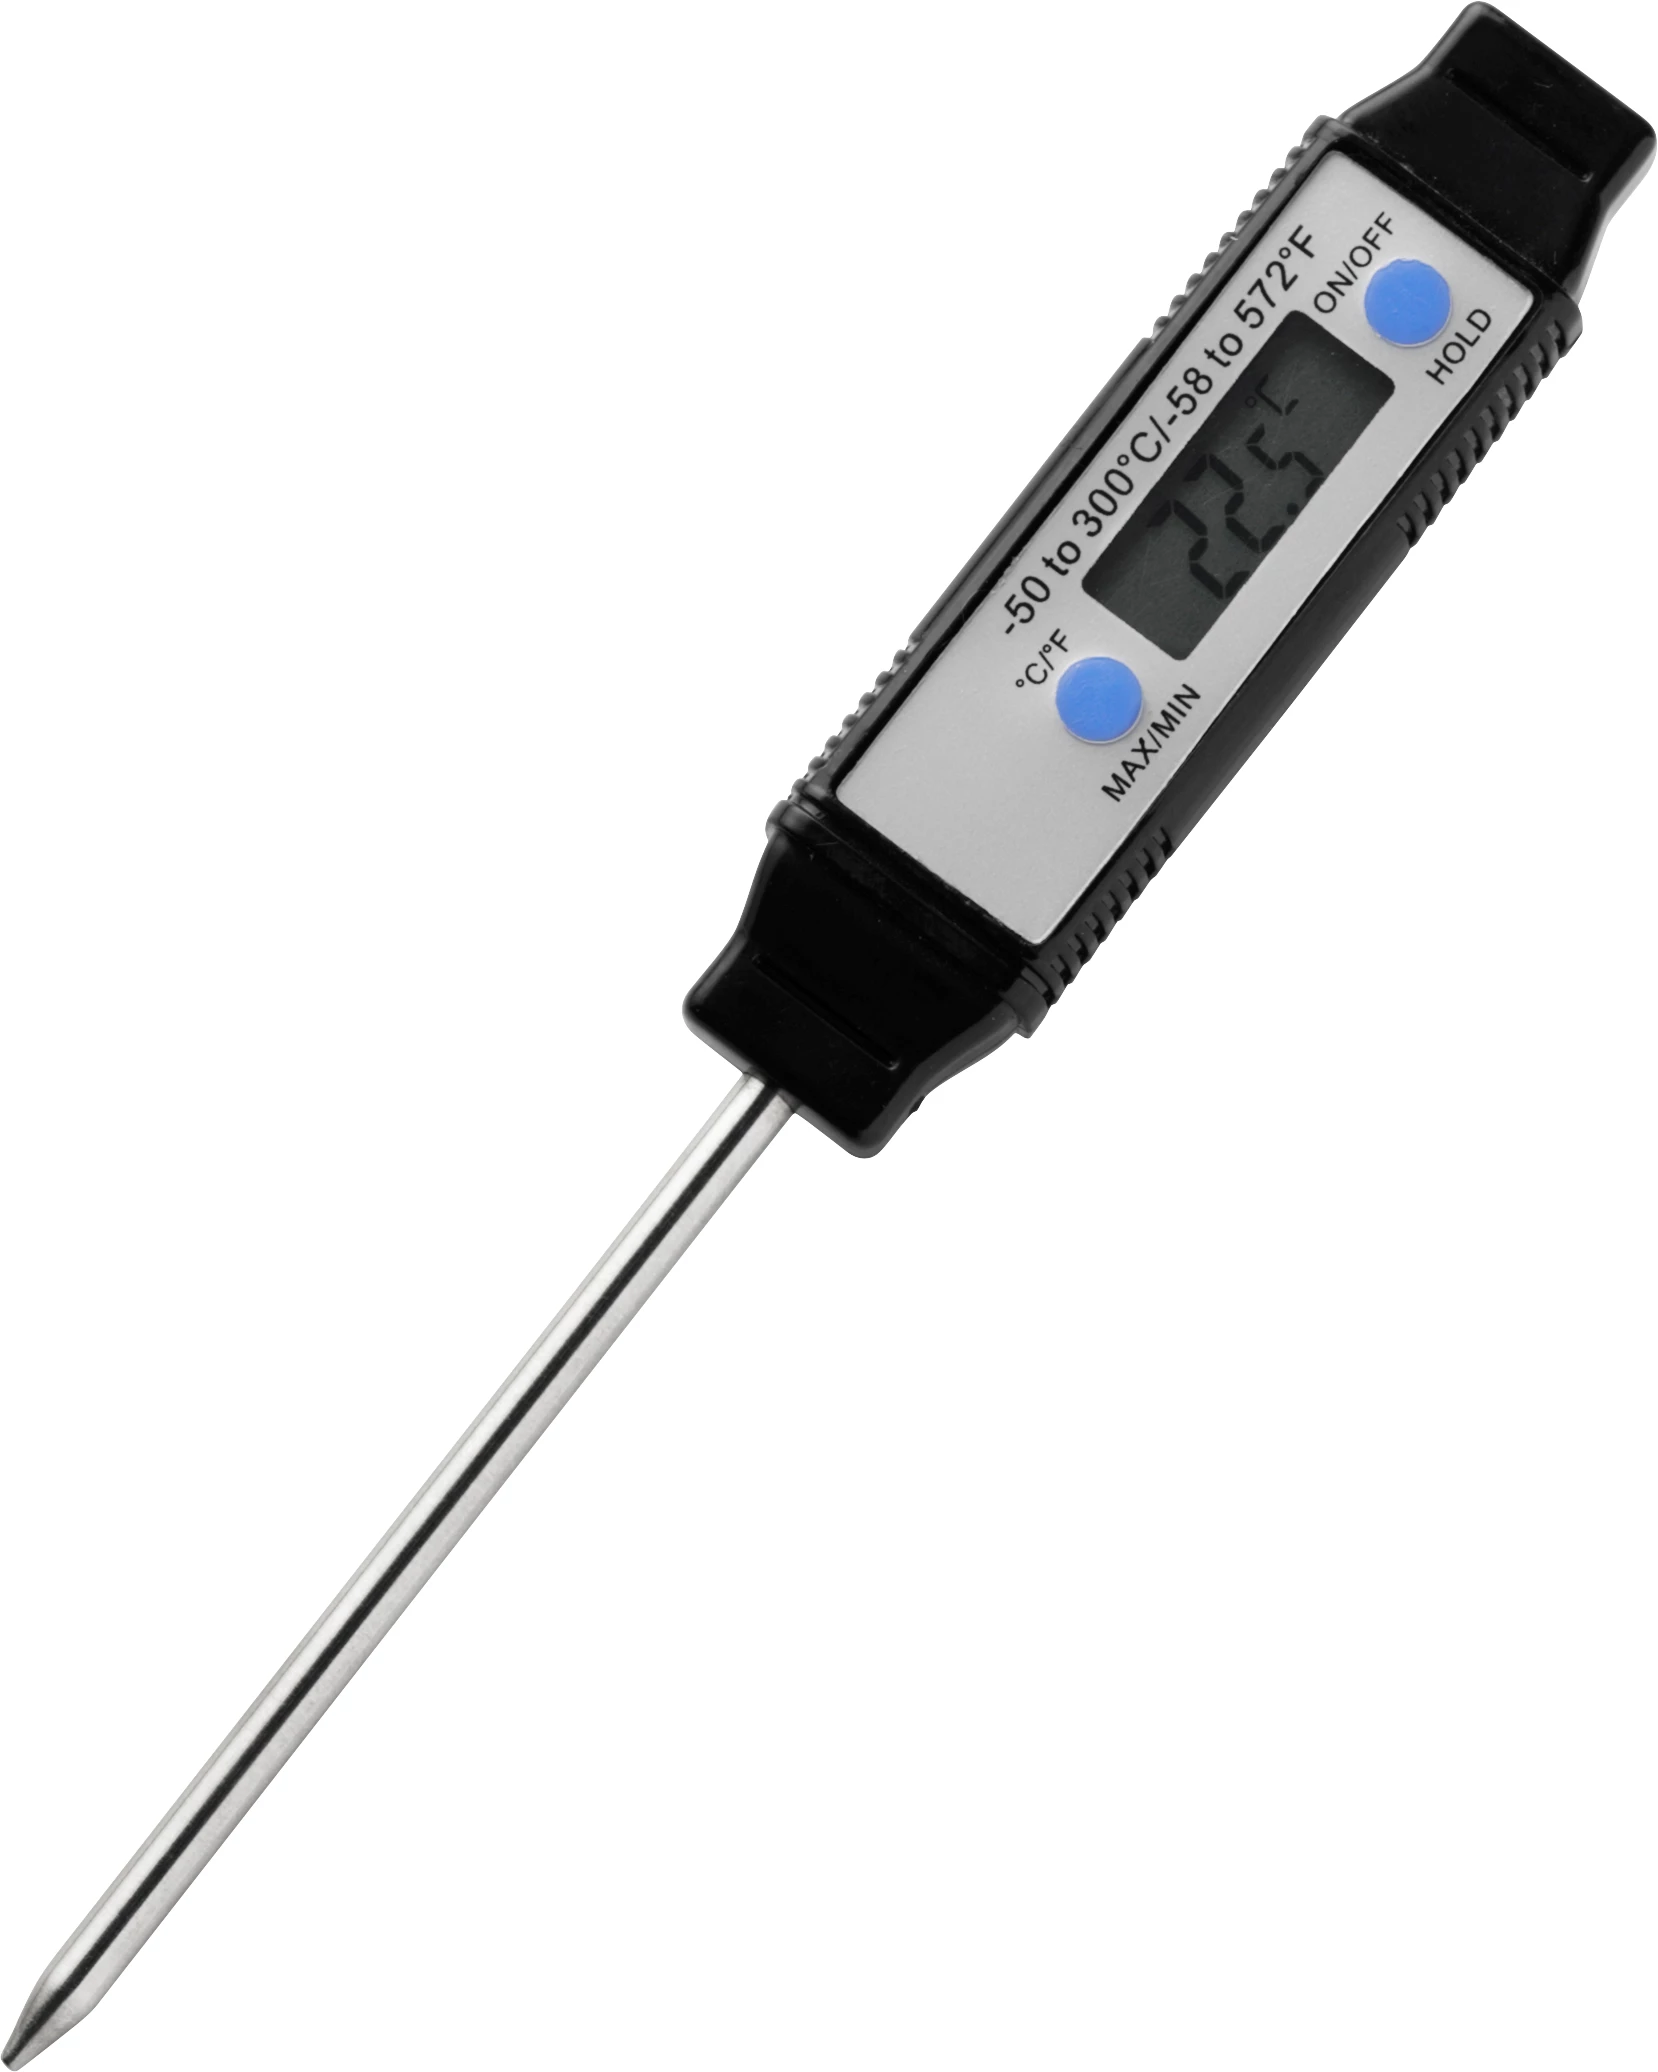 Pen-indstikstermometer